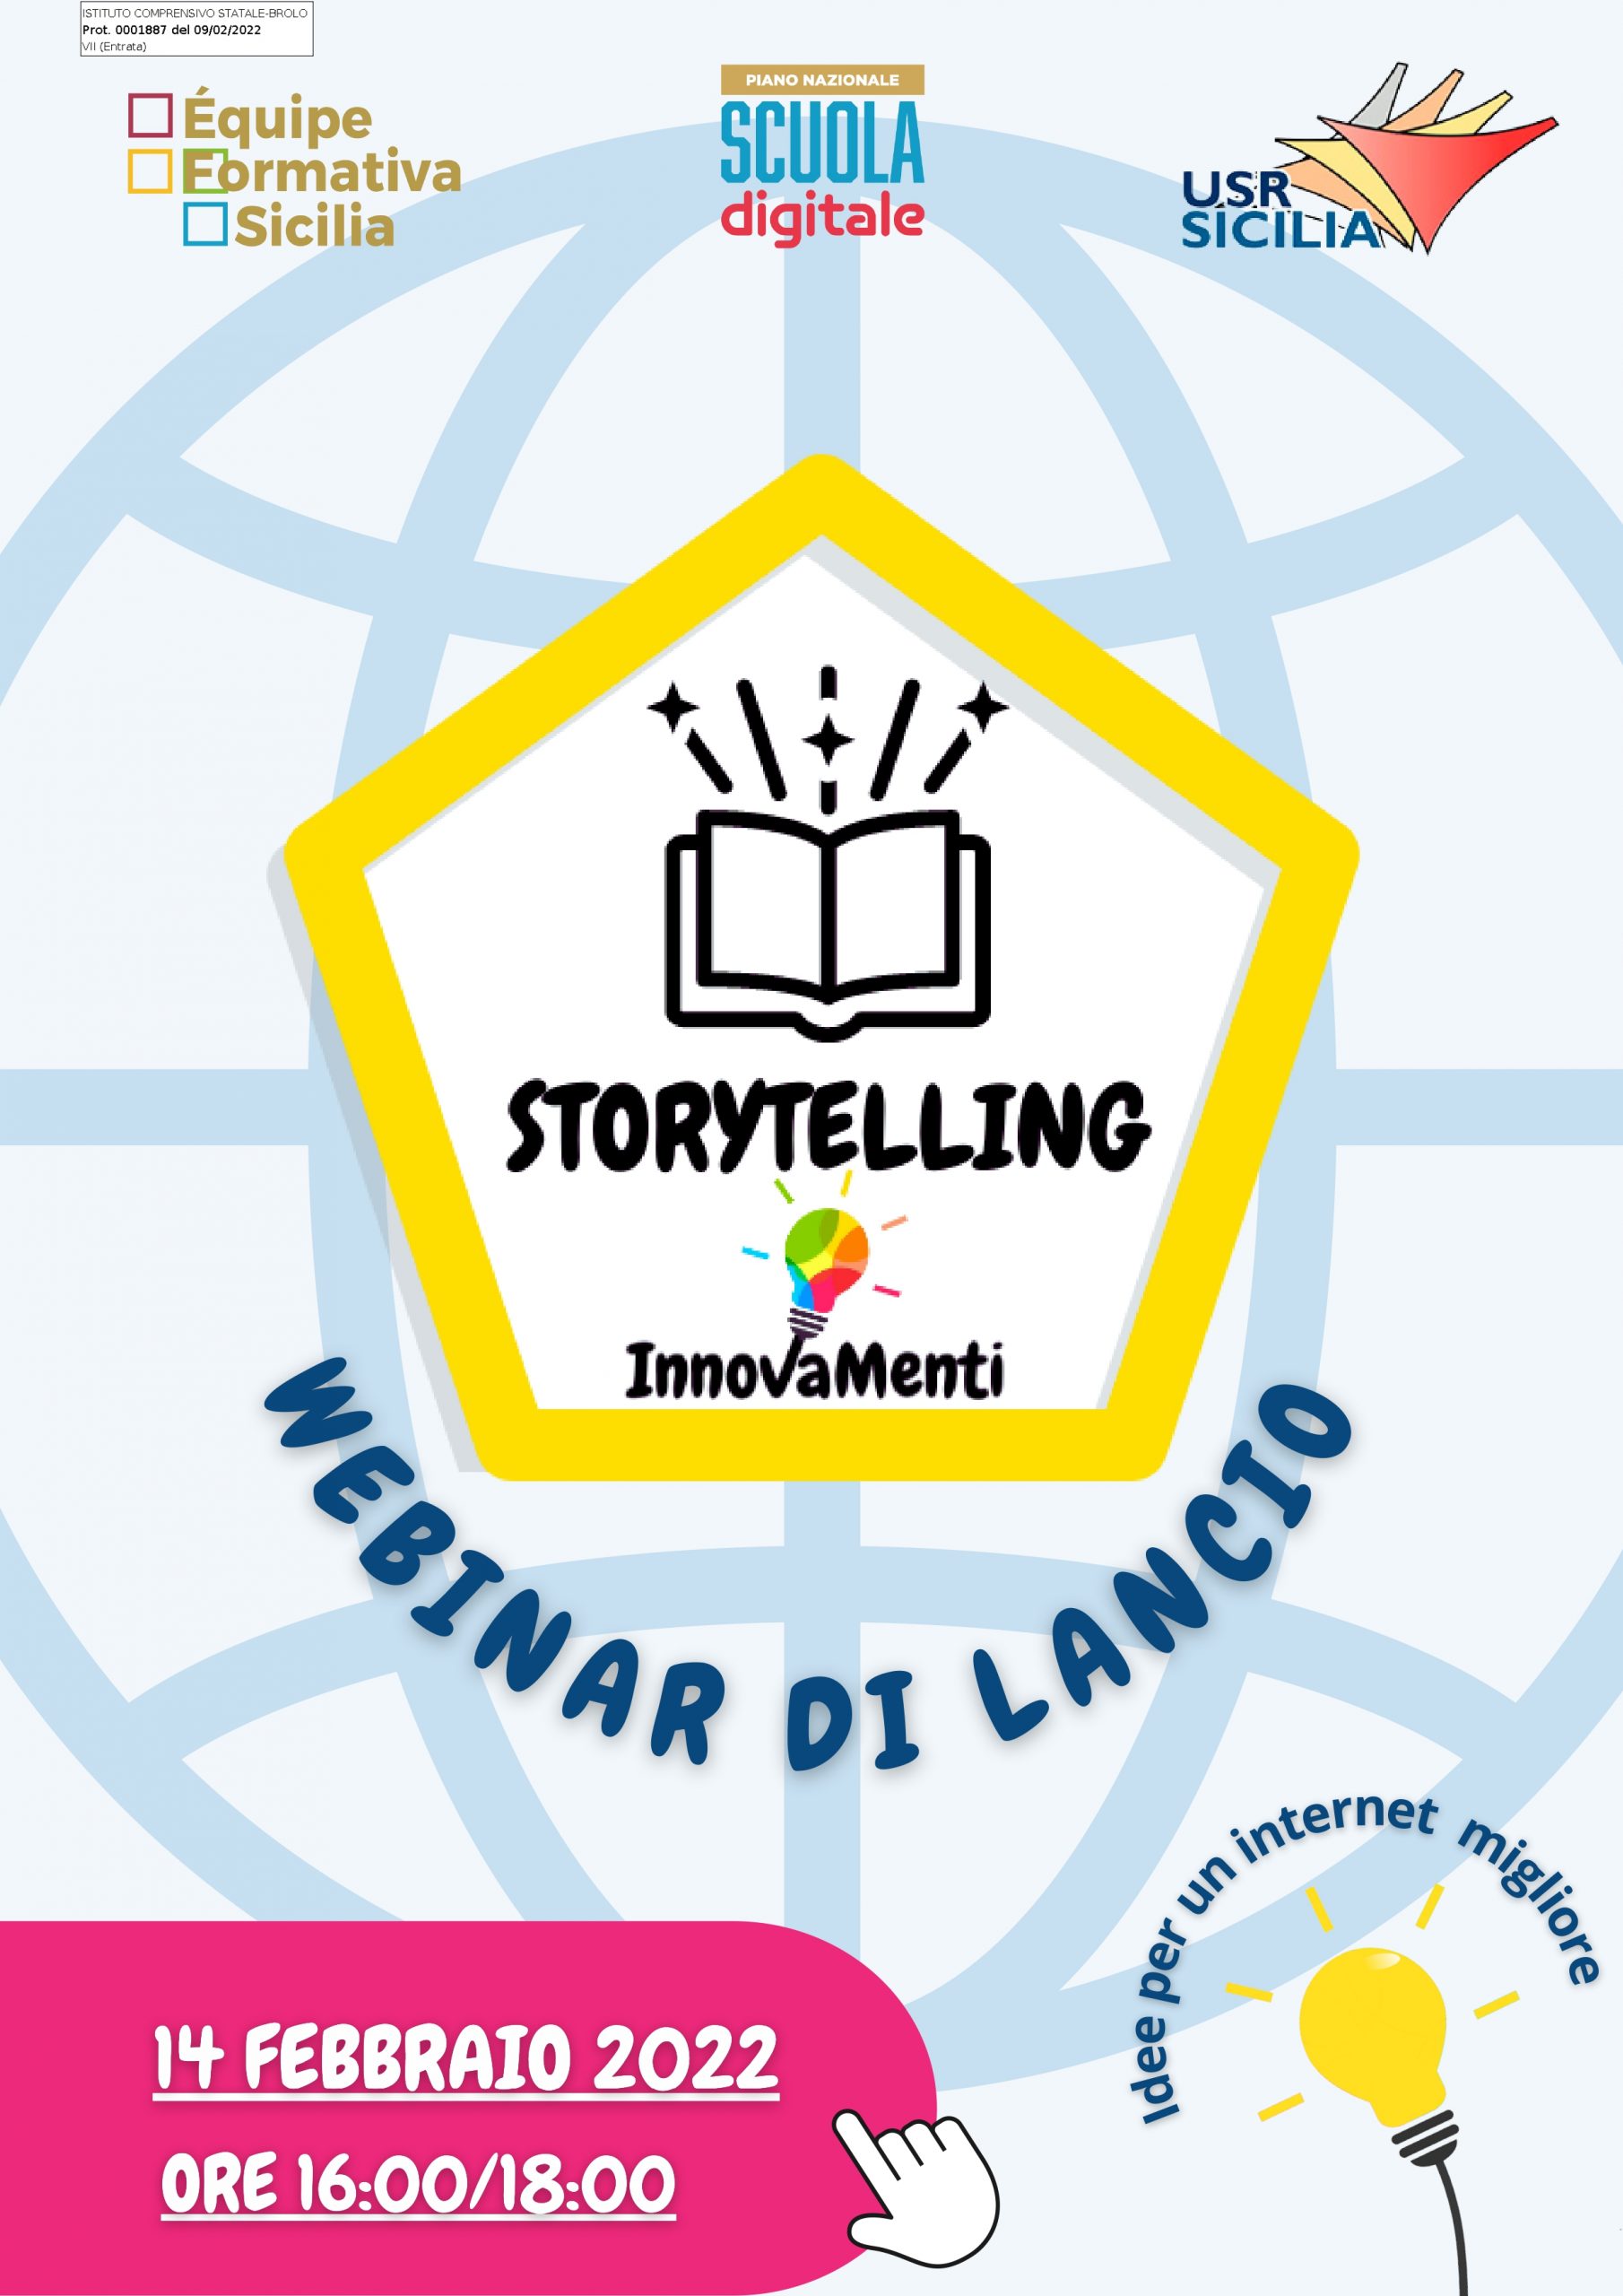 Circolare n. 237 - Progetto InnovaMenti - Webinar di presentazione della metodologia Storytelling a cura dell'Équipe Formativa Territoriale della Sicilia dedicato a tutti i docenti.